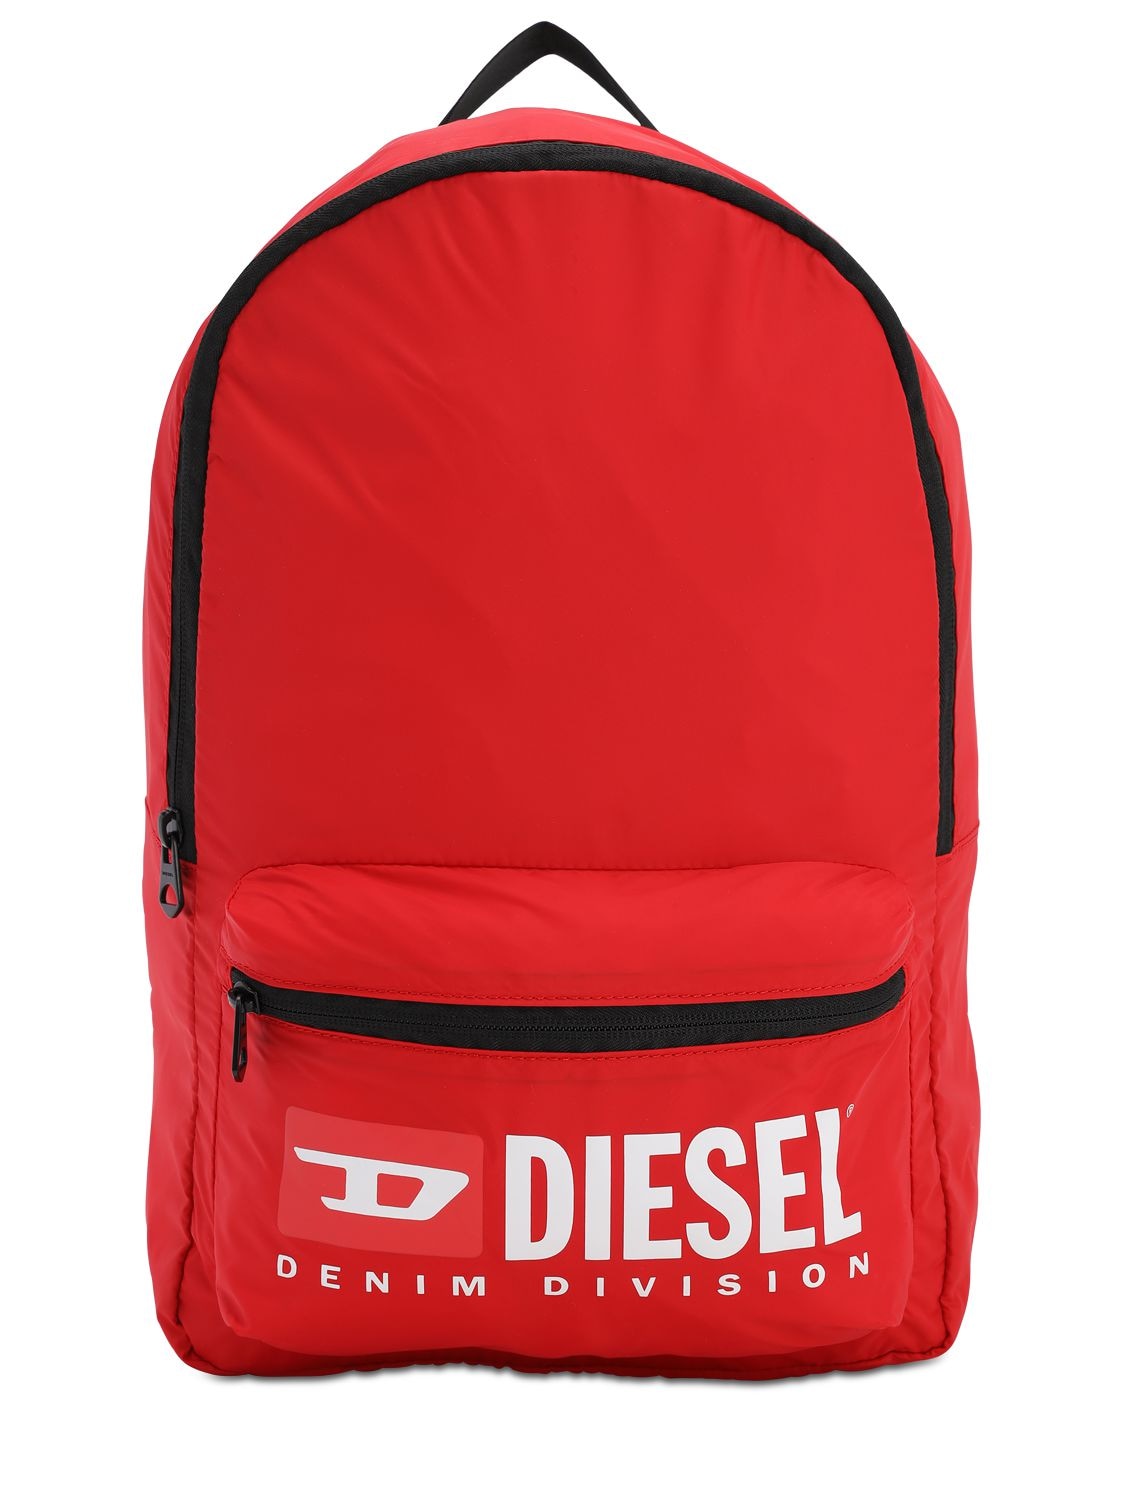 Diesel Kids' Logo Print Nylon Backpack In Red